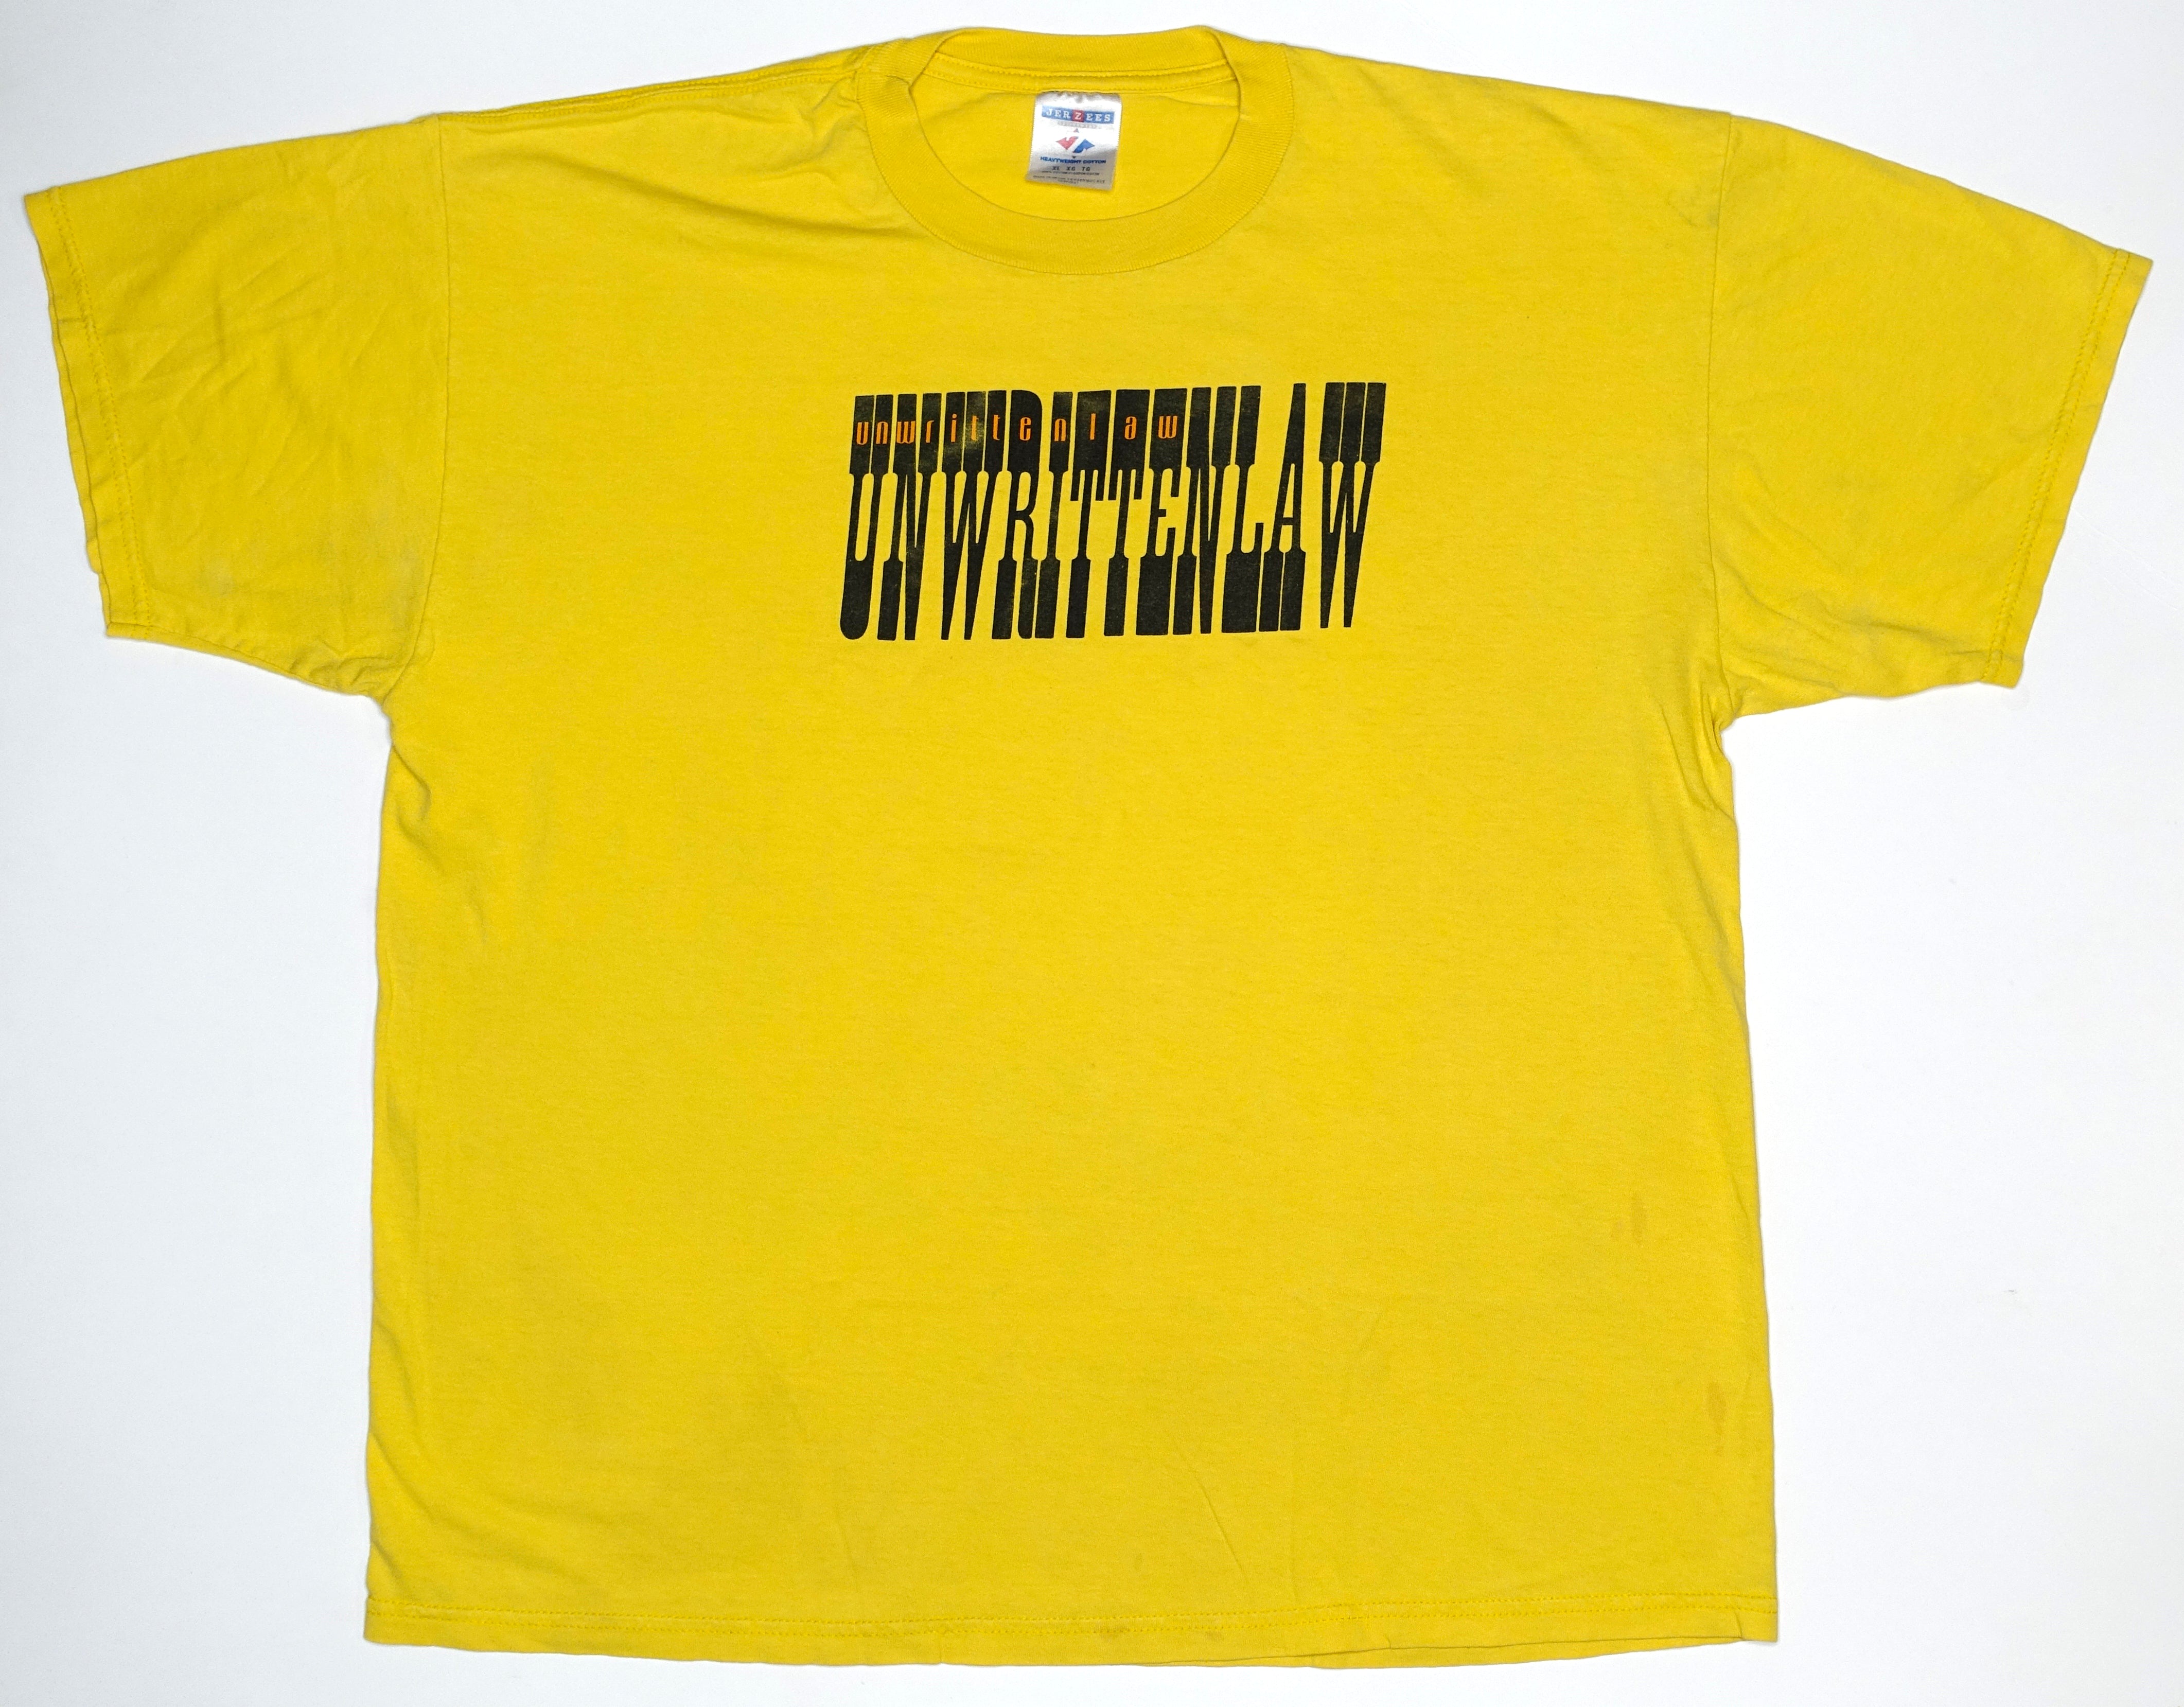 Unwritten Law – Double Vision S/T 1998 Tour Shirt Size XL